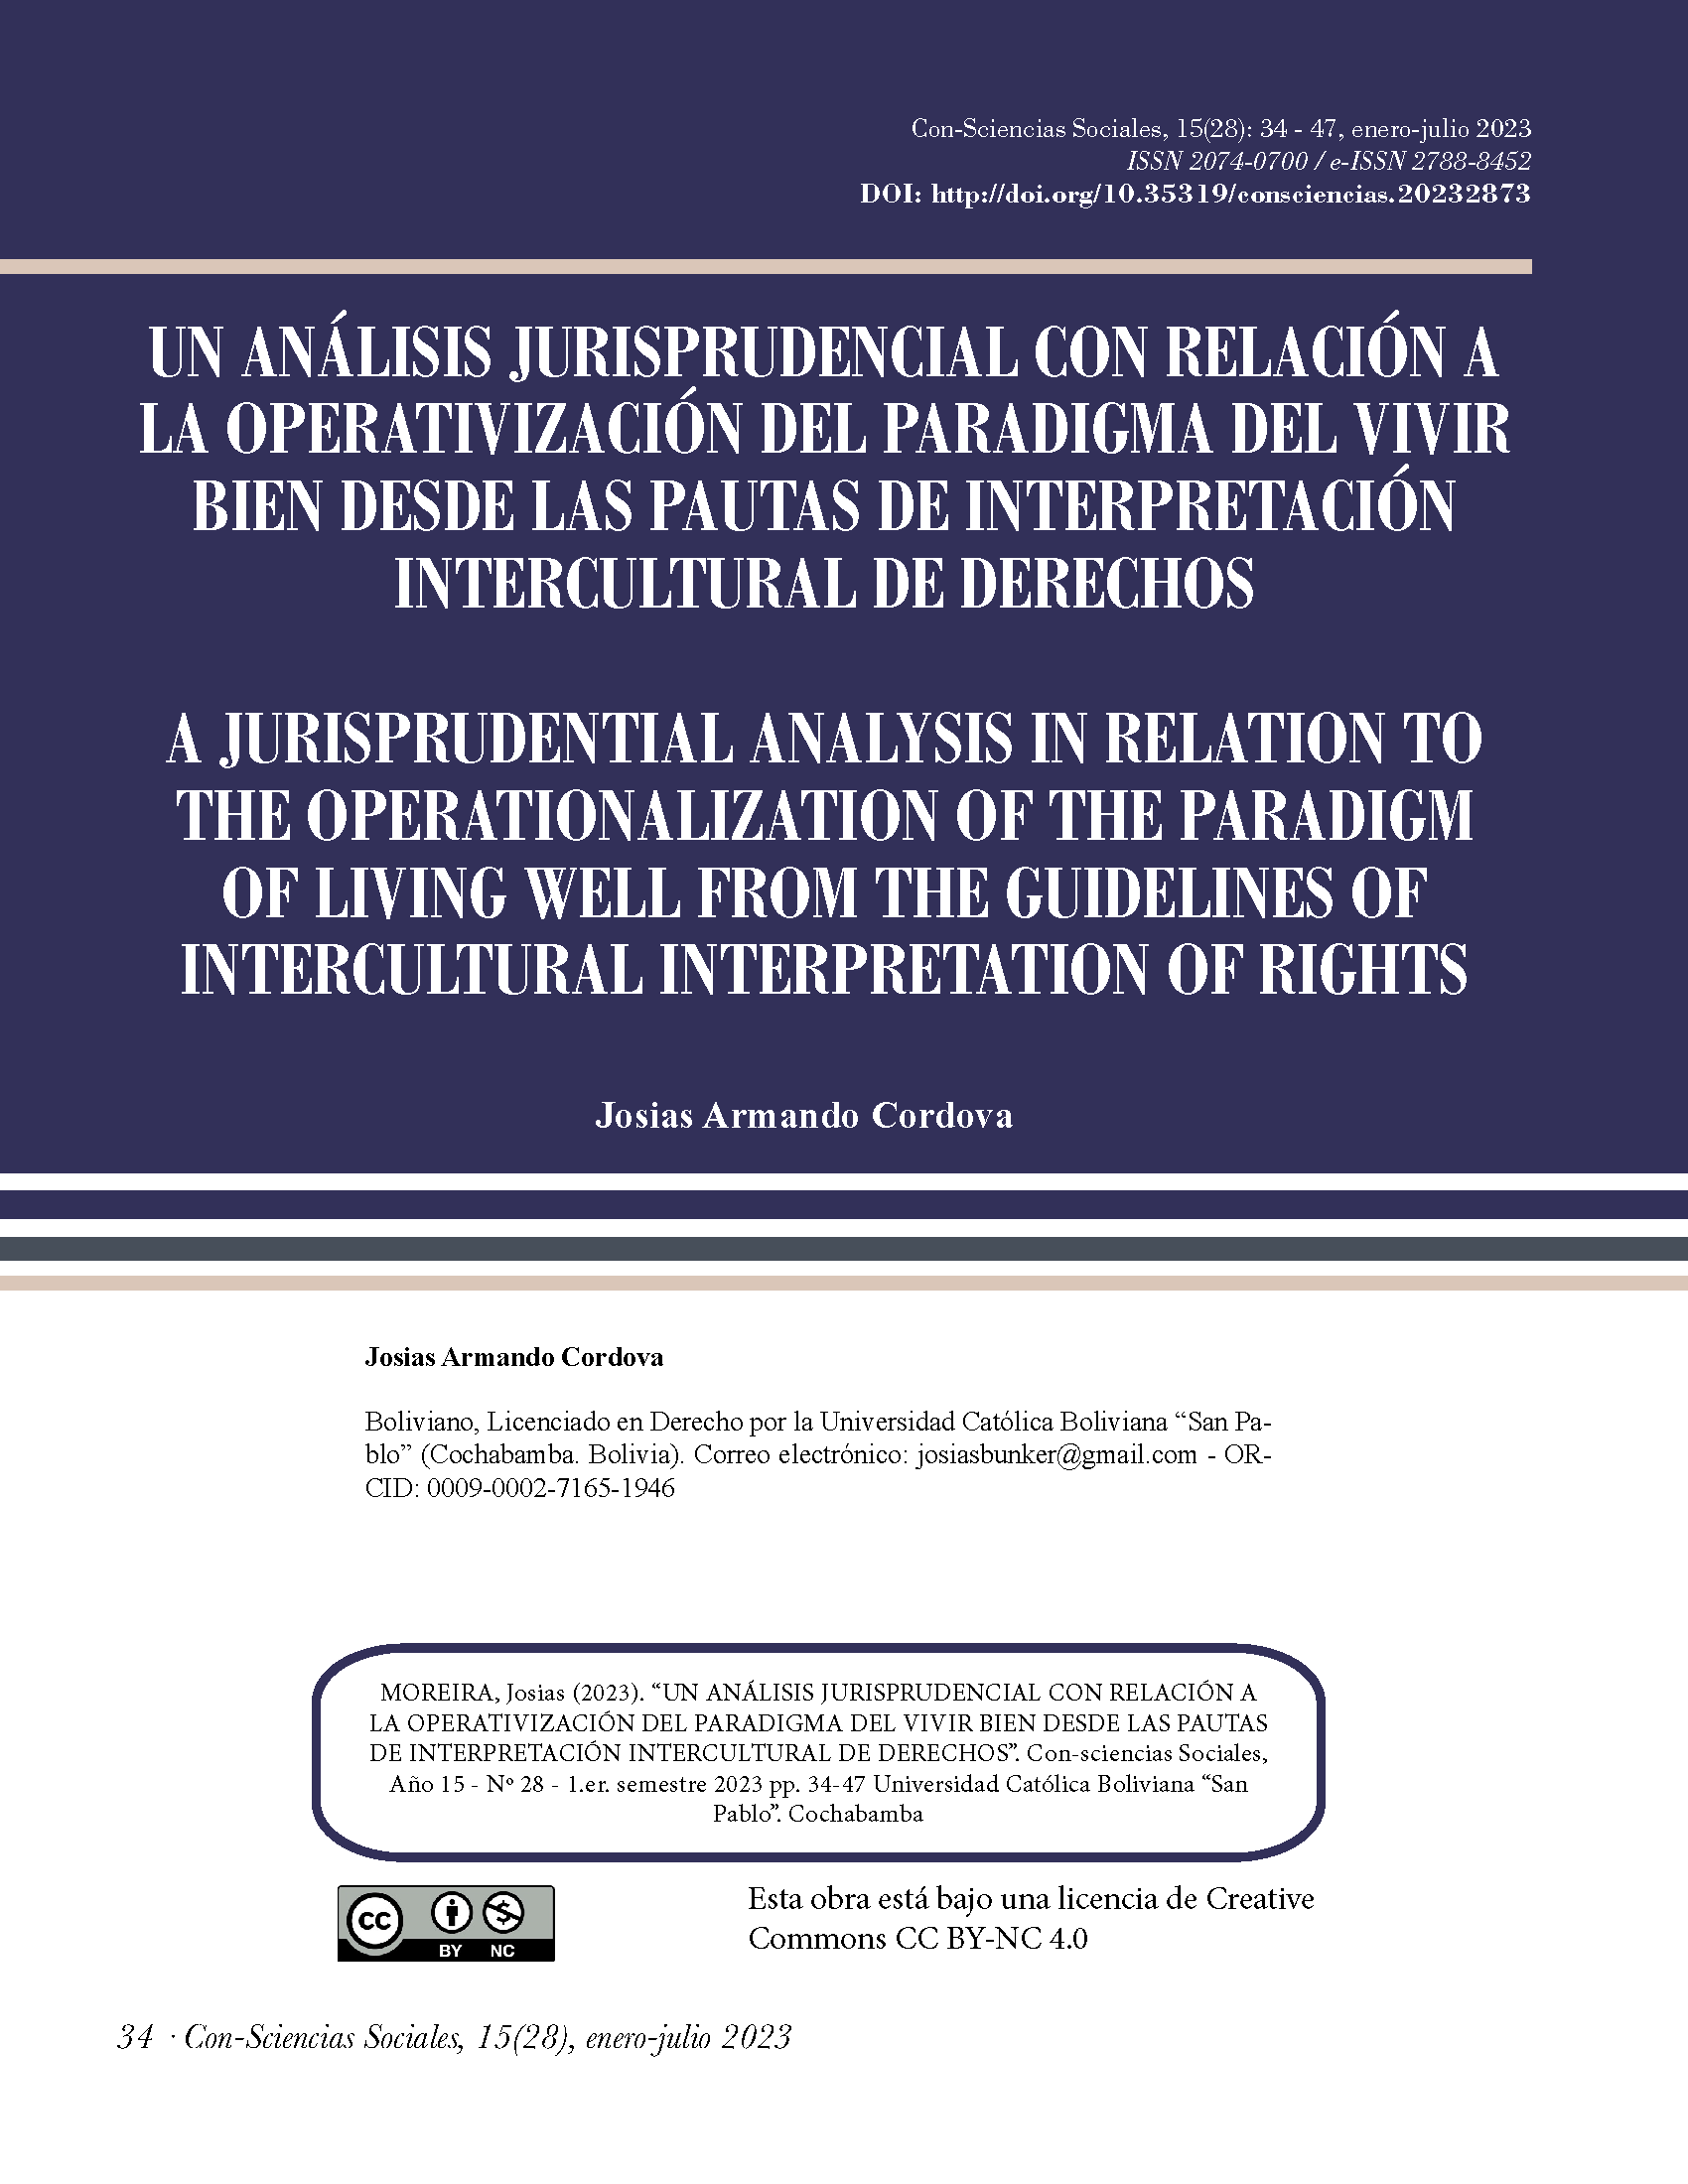 Un análisis jurisprudencial con relación a la operativización del paradigma del vivir bien desde las pautas de interpretación intercultural de derechos